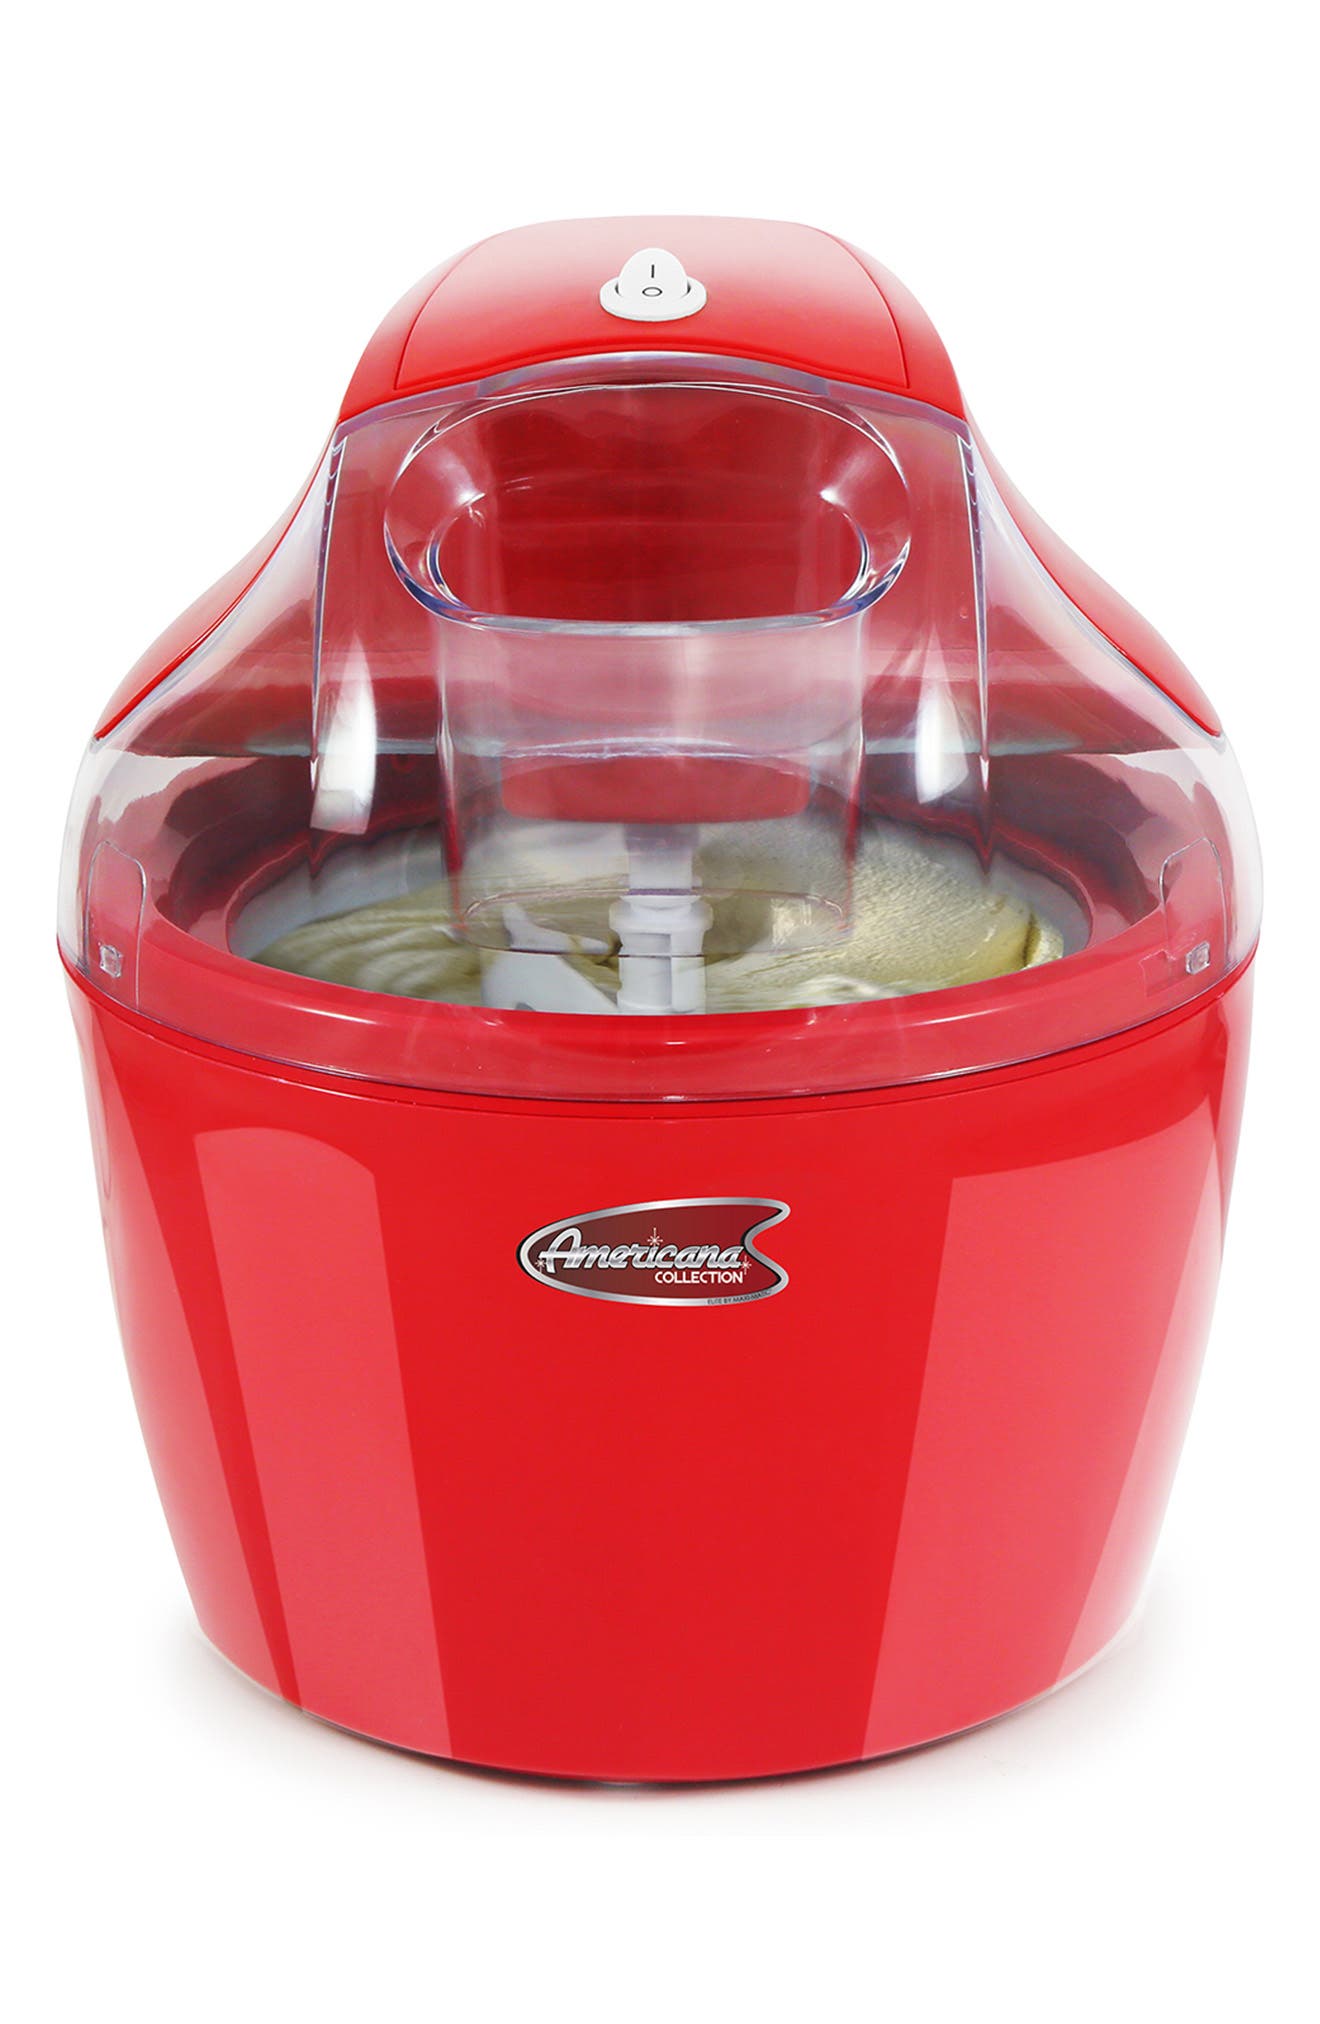 Maxi-matic Americana Eim-1400r 1.5qt Electric Ice Cream Maker In Red